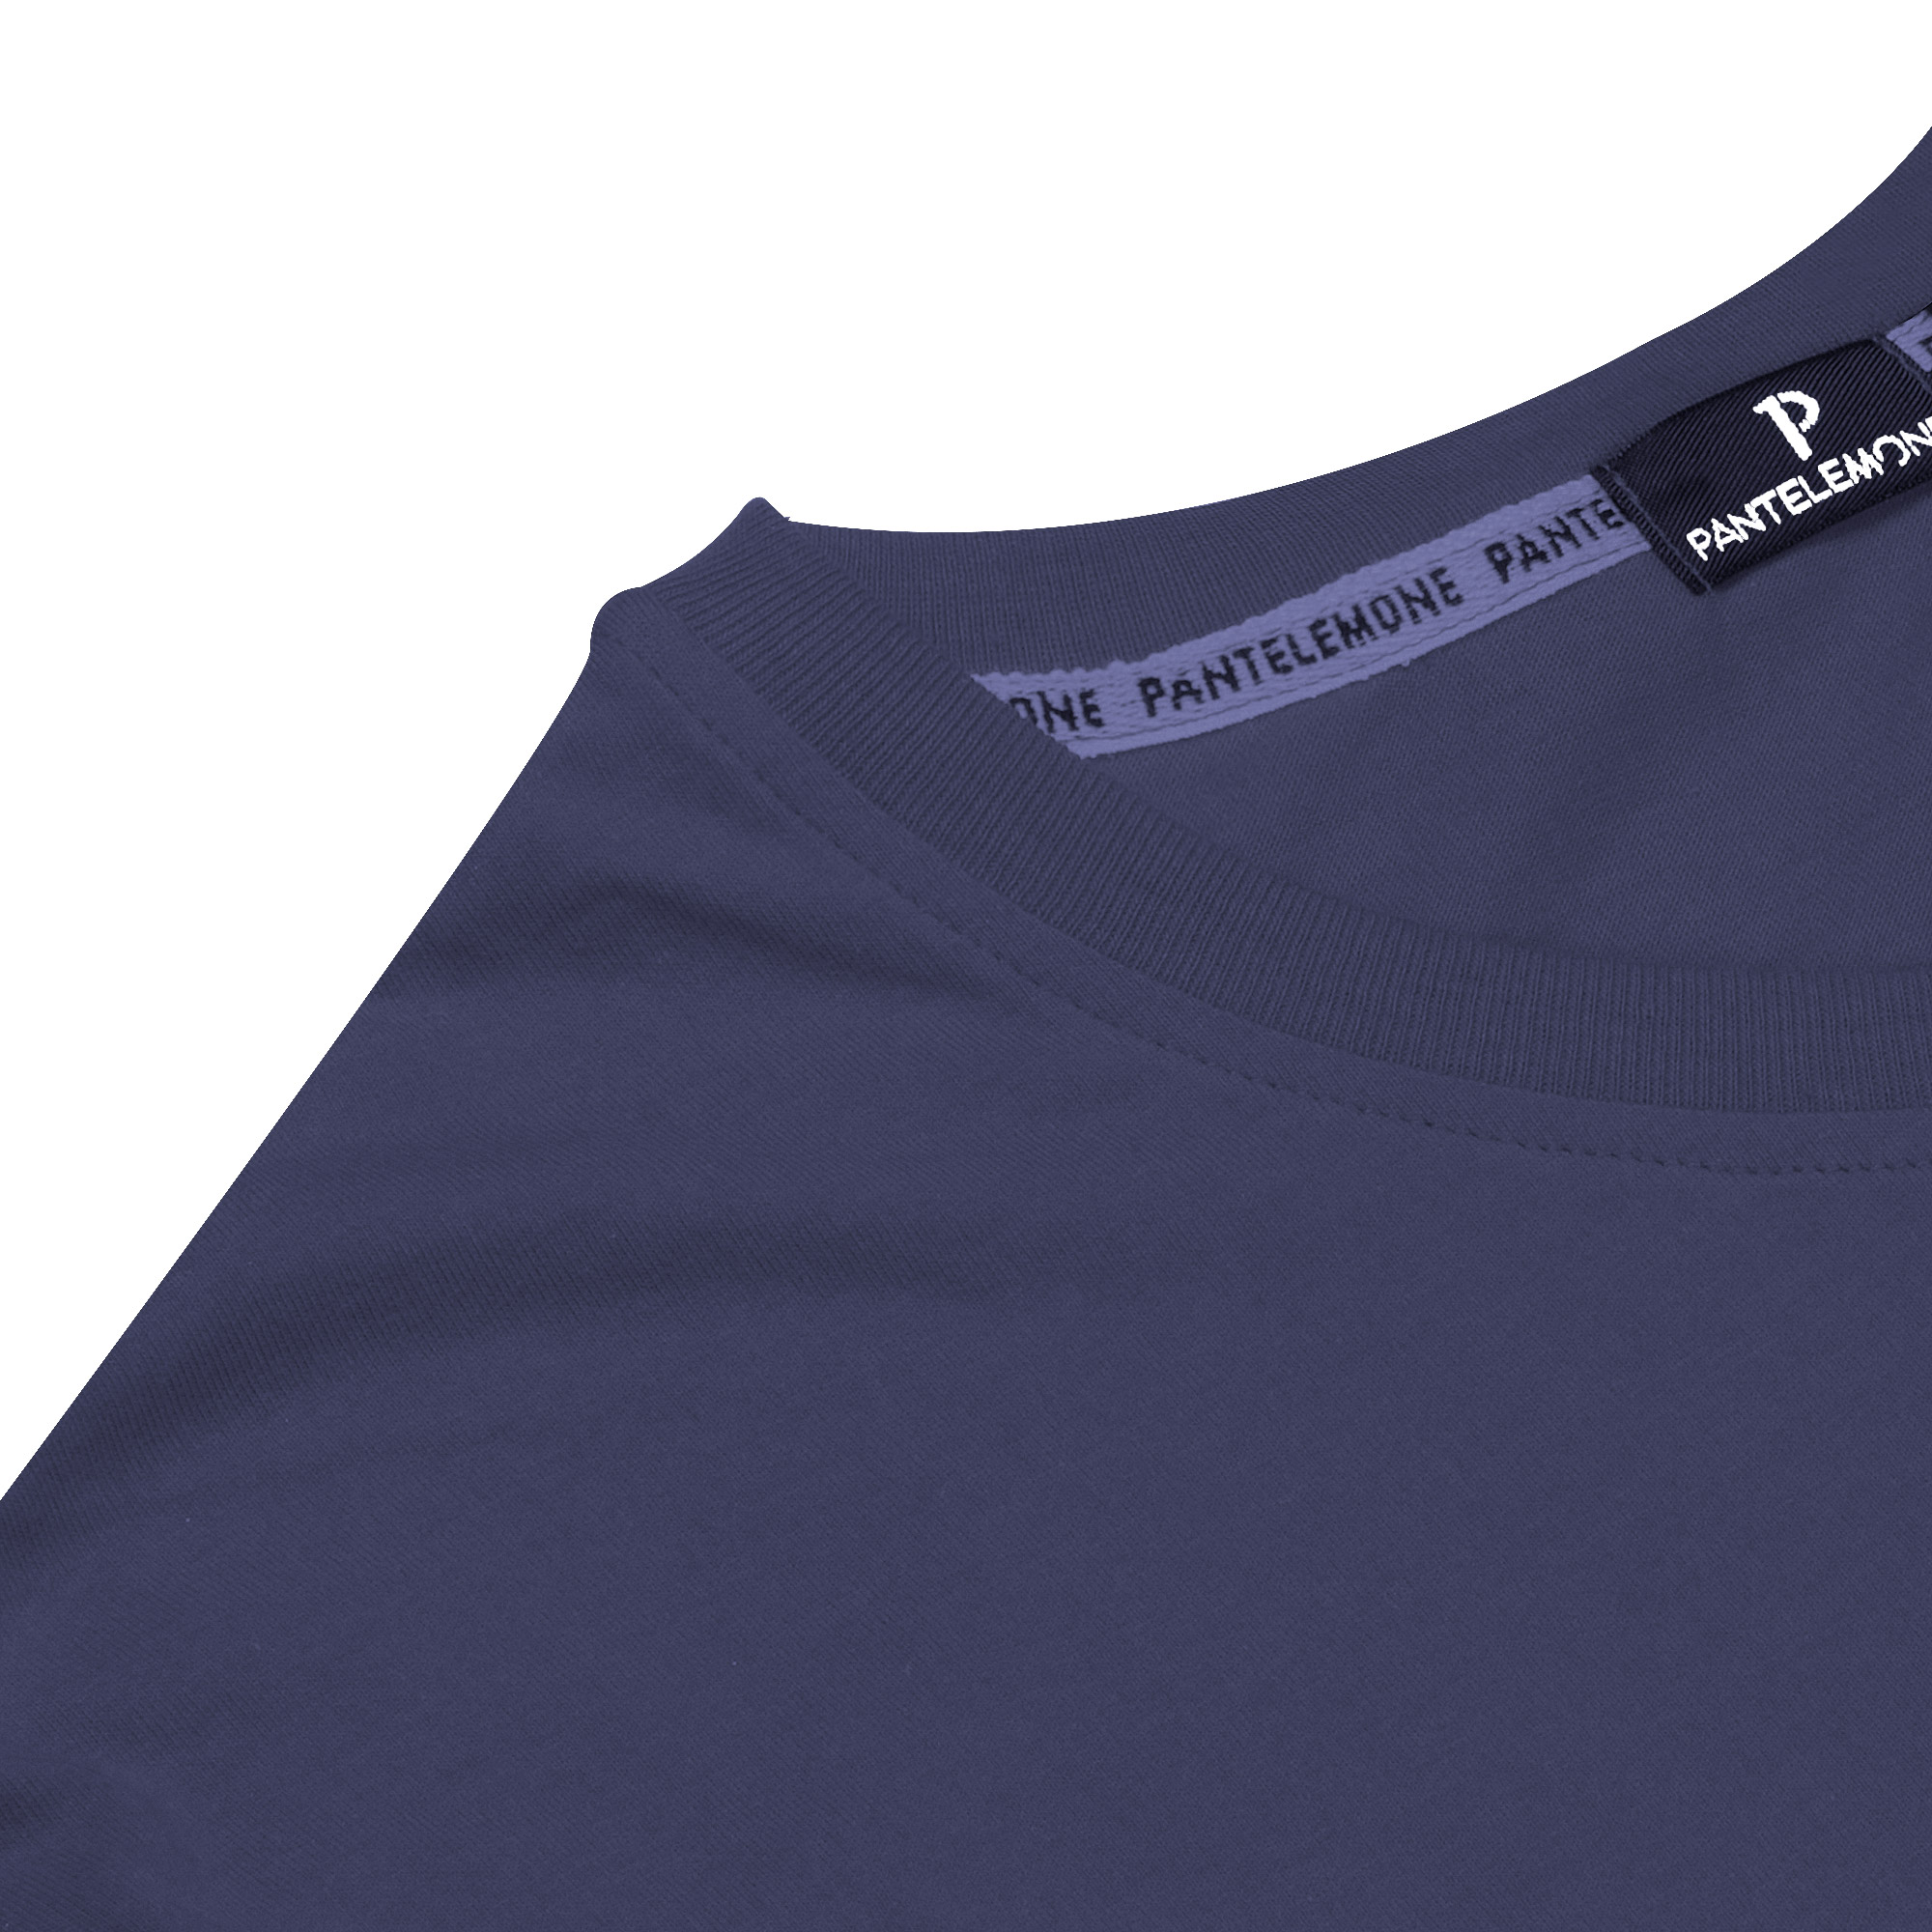 Мужская футболка Pantelemone MF-898 темно-синяя 48, цвет темно-синий, размер 48 - фото 3